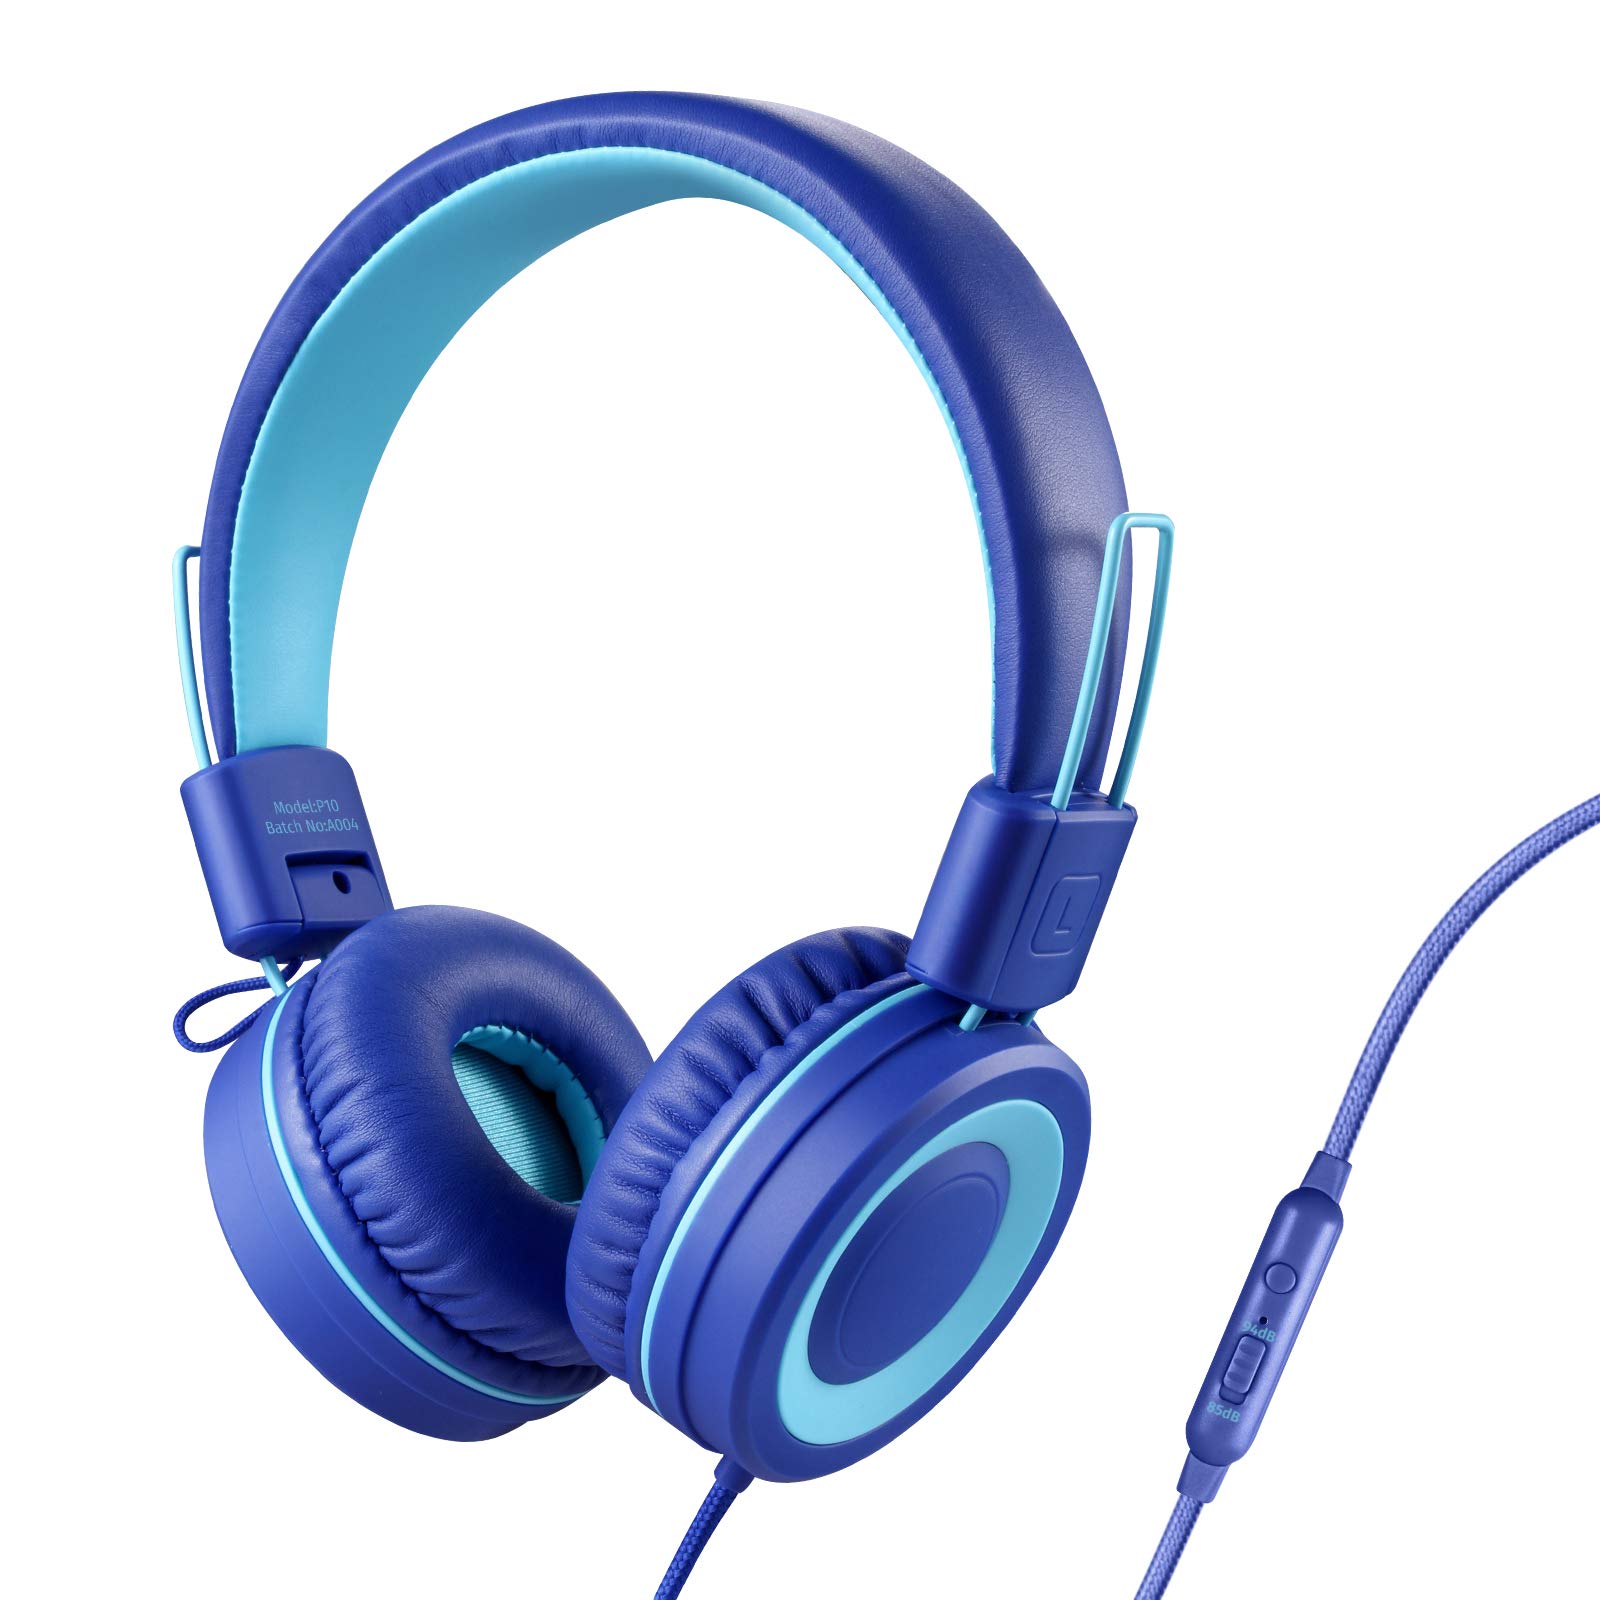 Powmee P10 儿童耳机带麦克风立体声耳机儿童男孩女孩可调节 85dB/94dB 音量控制可折叠贴耳式耳机带麦克风适用于学校/电脑/手机（蓝色）